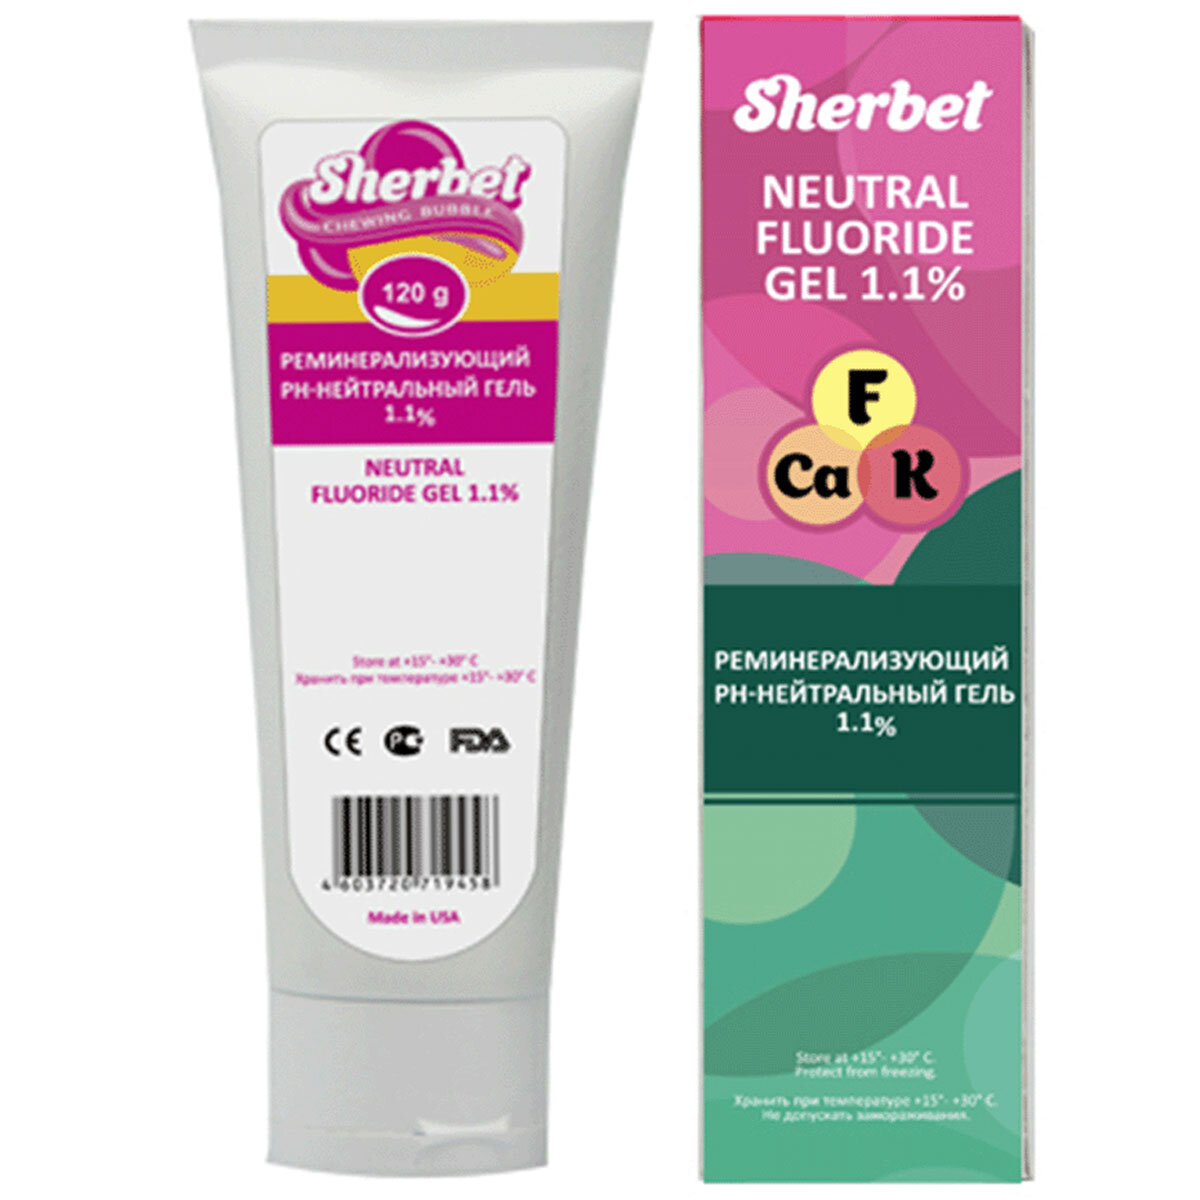 Sherbet Gel реминерализующий гель 11% жевательная резинка 120 г